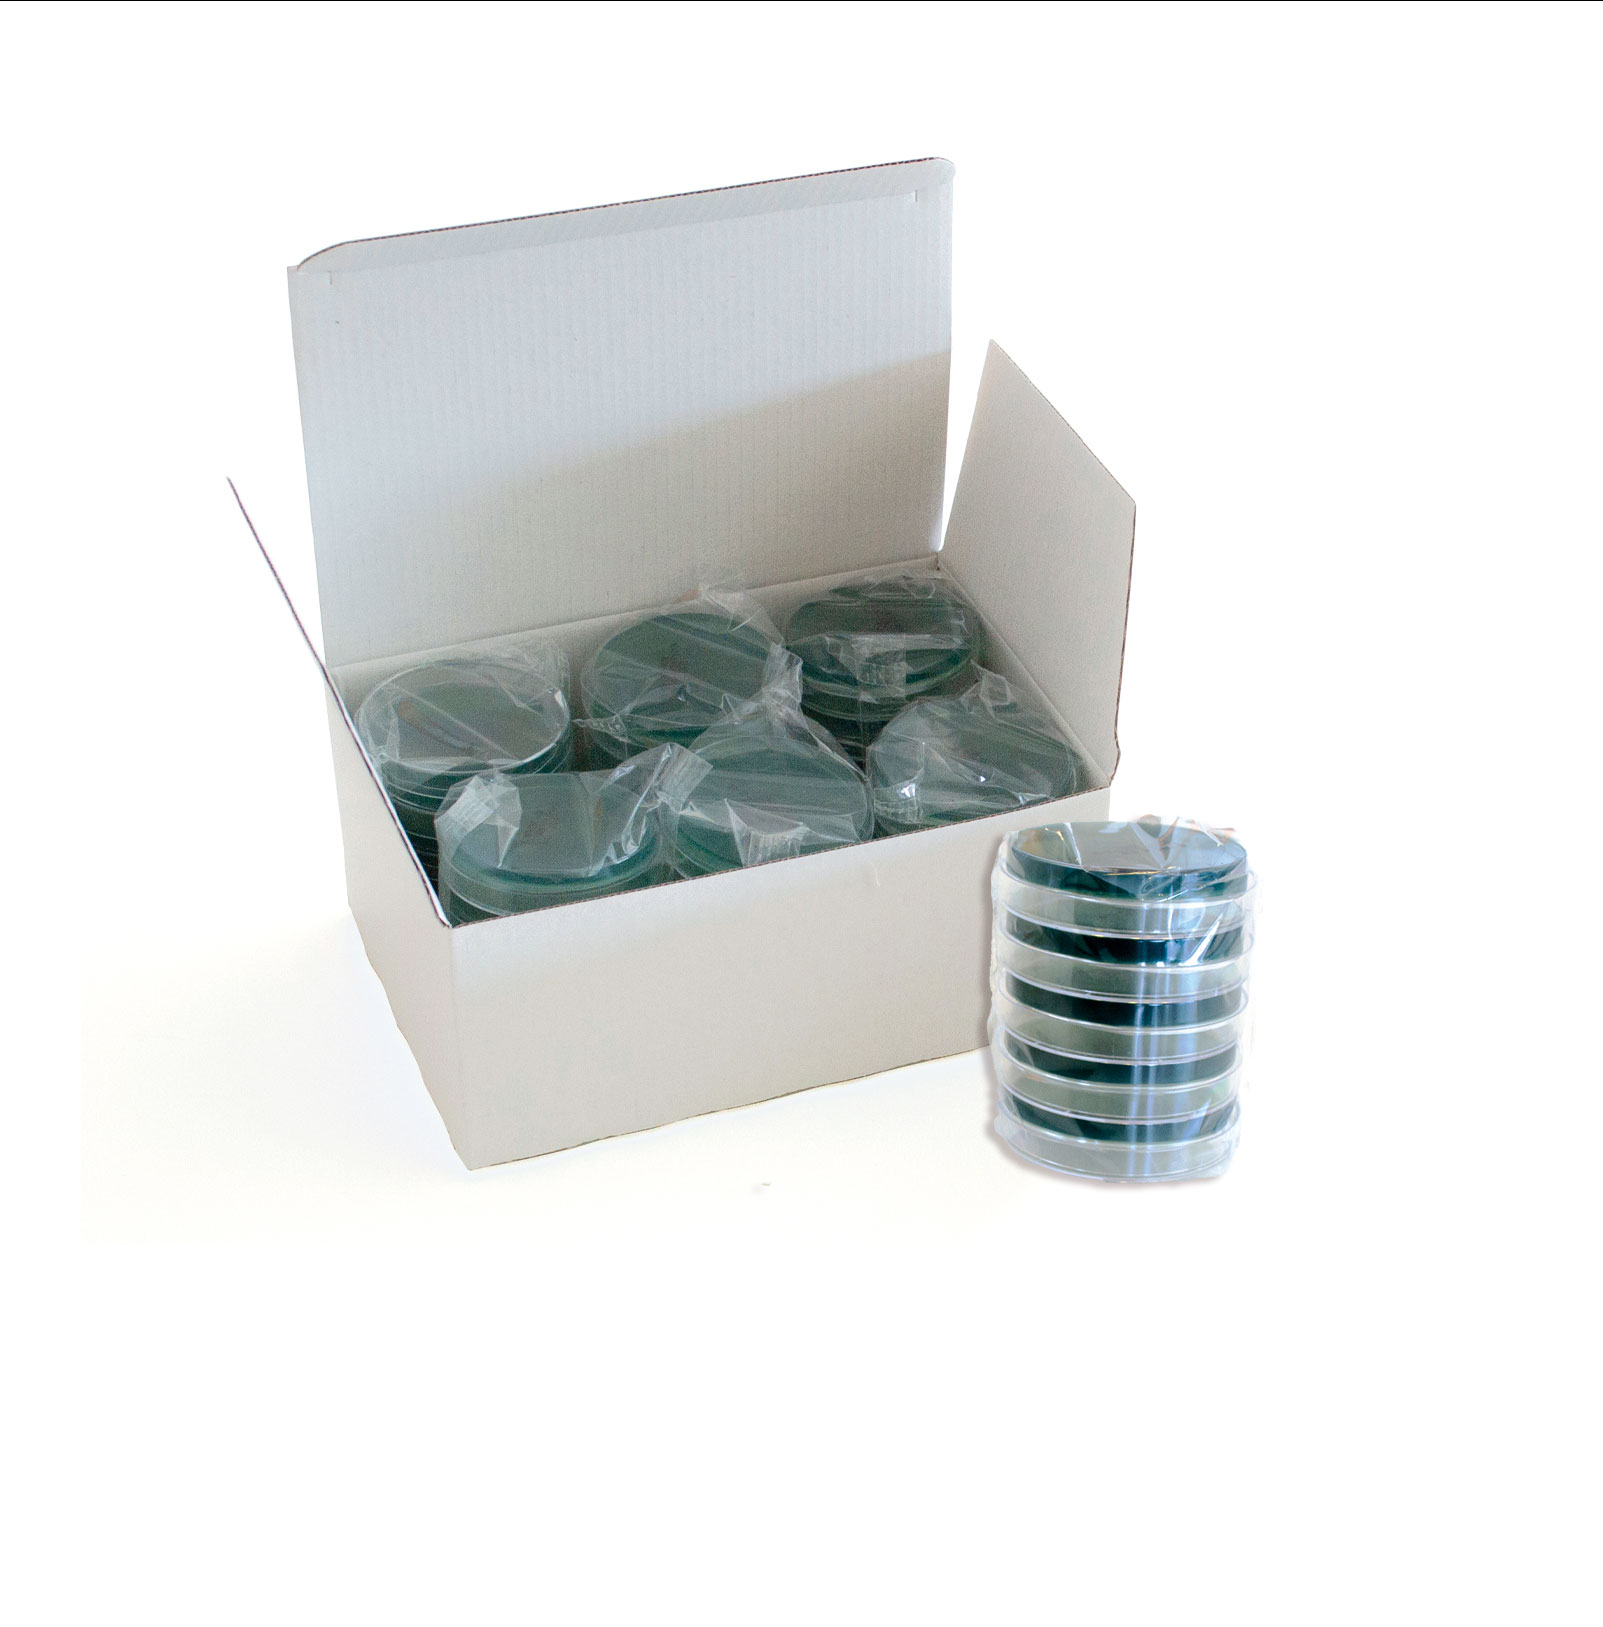 Medio de cultivo sólido para la detección e identificación presuntiva de Clostridium perfringens en muestras diversas. 1 caja contiene 3 bolsas de plástico con 3 RDPACK.Cada paquete contiene 10 placas de 55 mm.